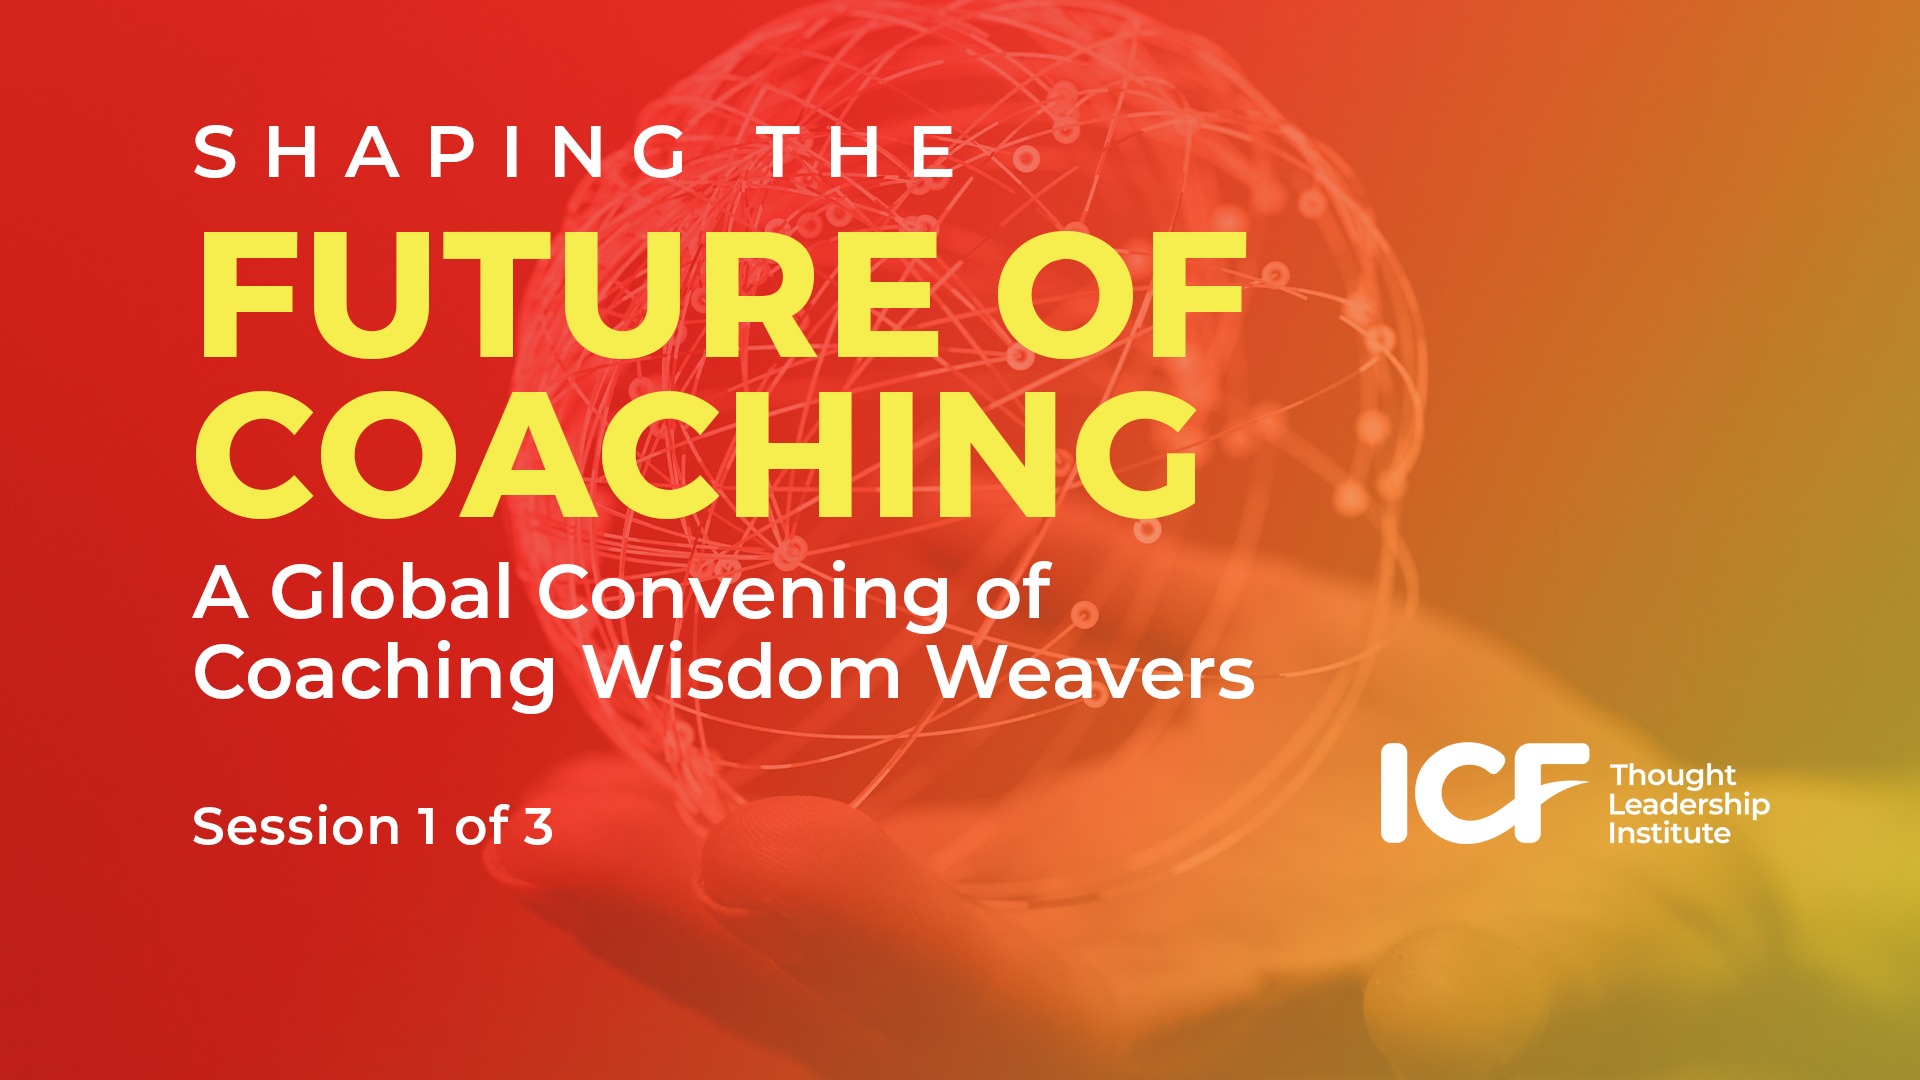 Shaping the Future of Coaching: Coaching Outcomes